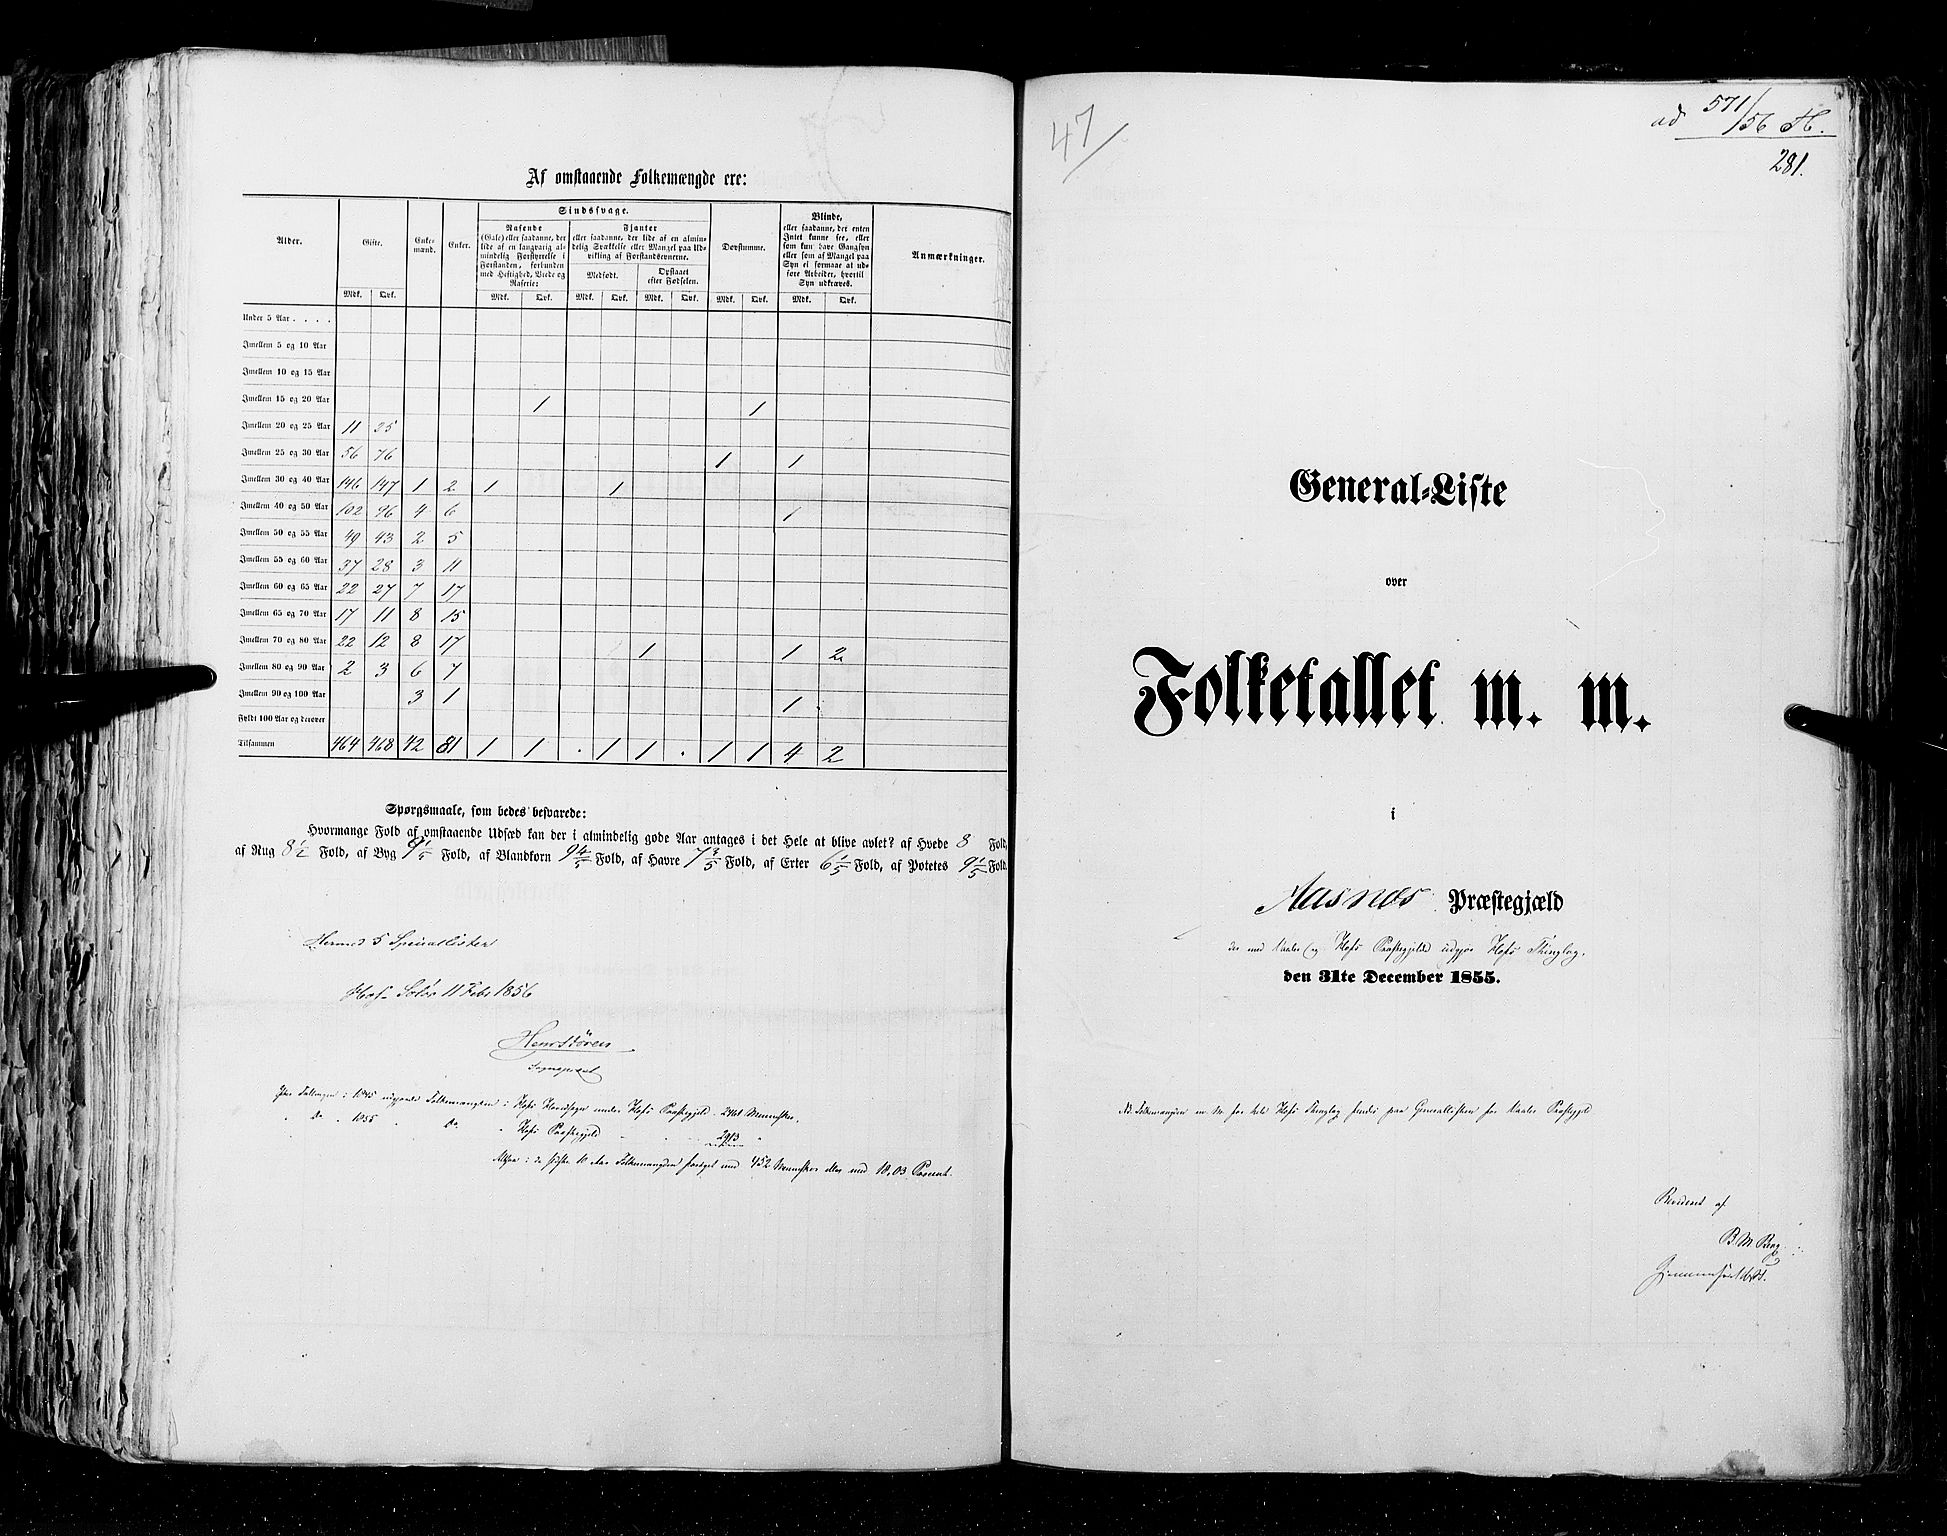 RA, Census 1855, vol. 1: Akershus amt, Smålenenes amt og Hedemarken amt, 1855, p. 281